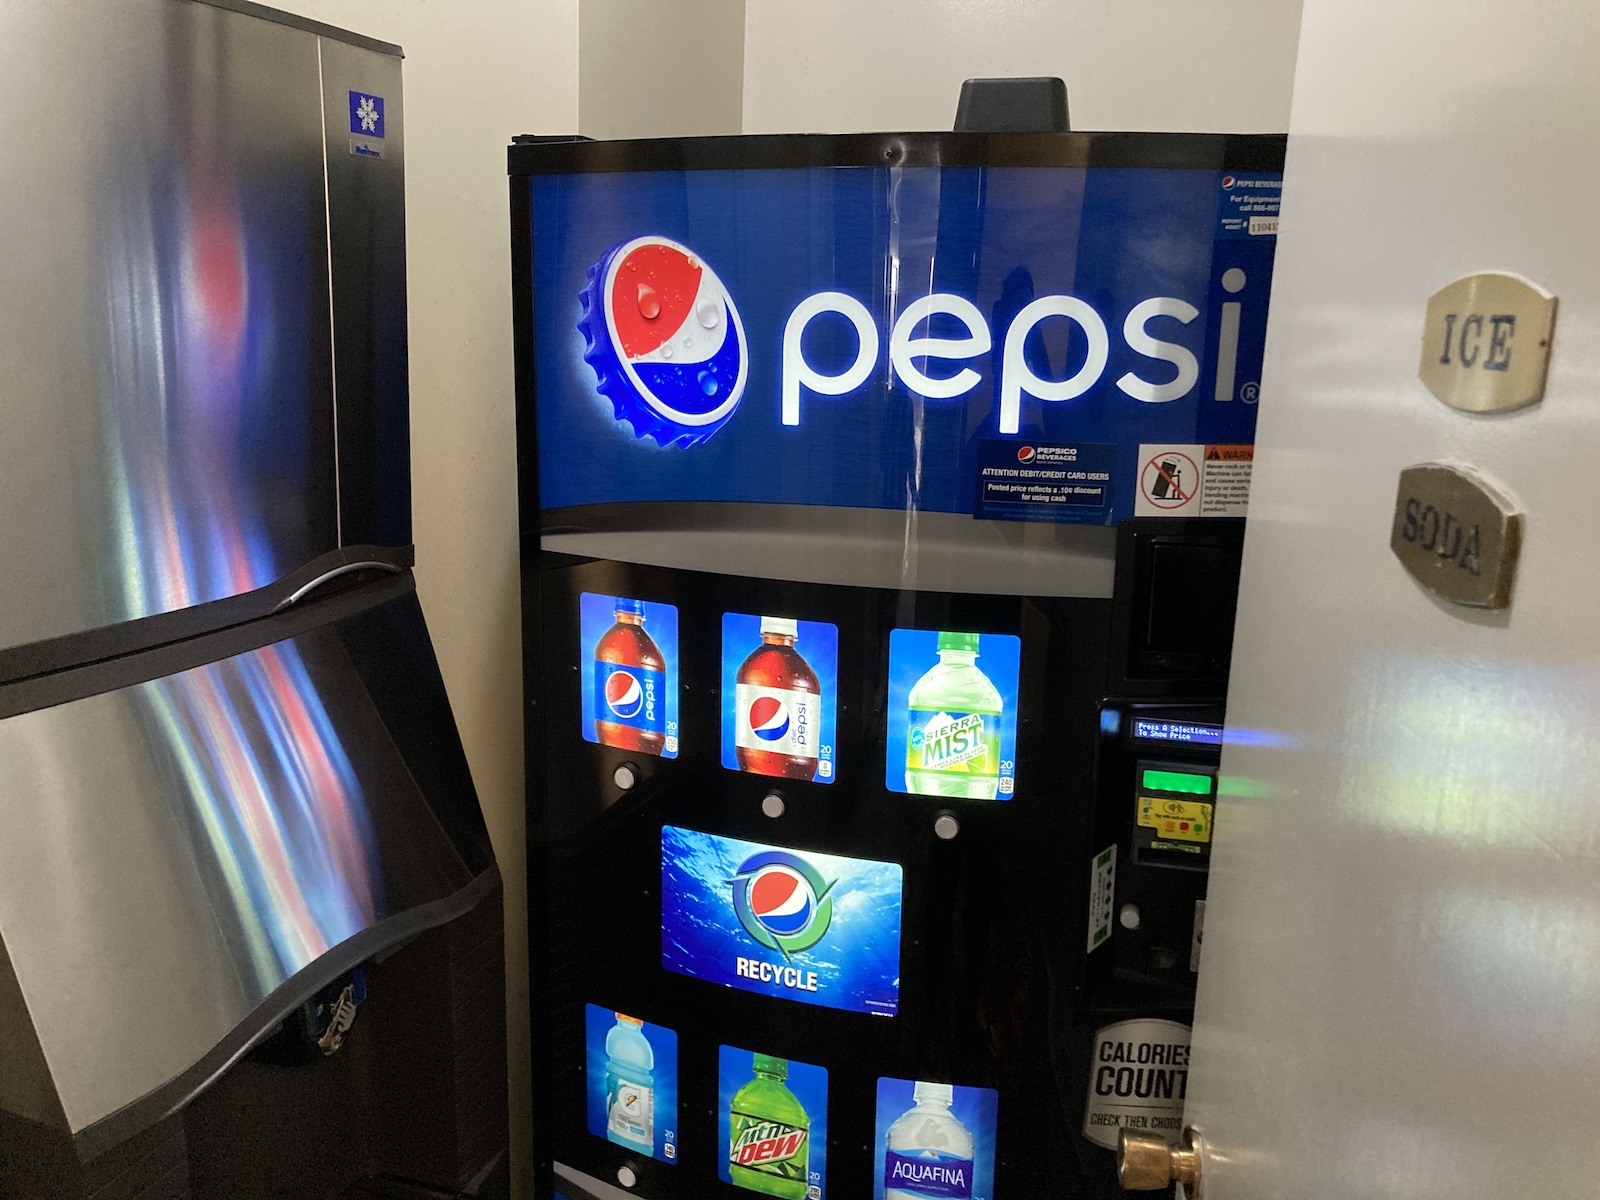 Image of ice machine and soda vending machine